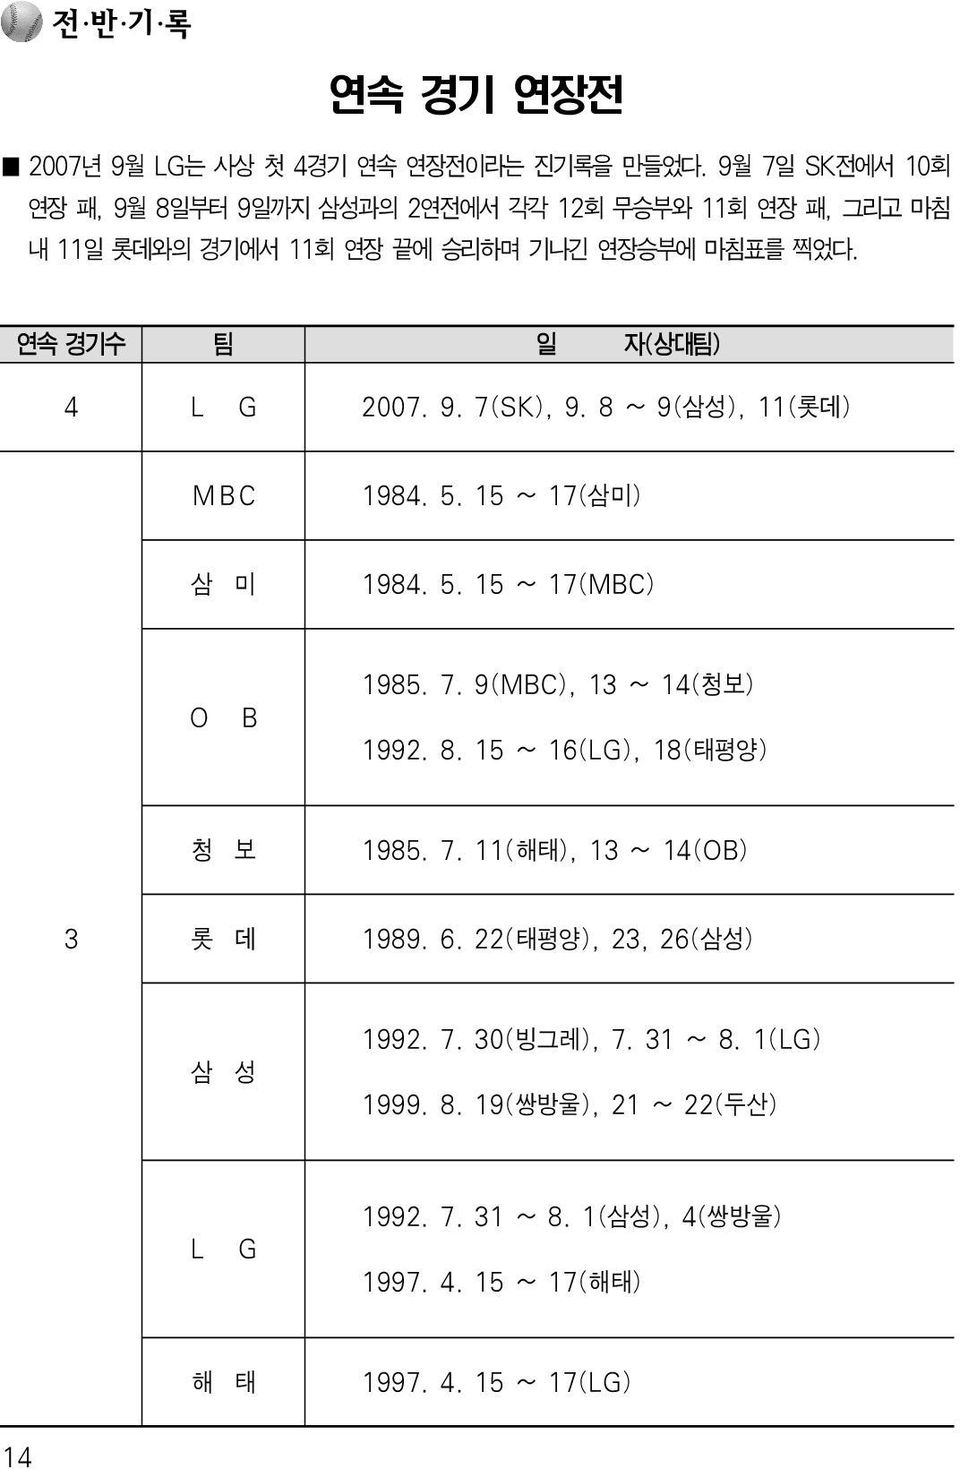 연속 경기수 팀 일 자(상대팀) 4 L G 2007. 9. 7(SK), 9. 8 ~ 9(삼성), 11(롯데) MBC 1984. 5. 15 ~ 17(삼미) 삼 미 1984. 5. 15 ~ 17(MBC) O B 1985. 7. 9(MBC), 13 ~ 14(청보) 1992.